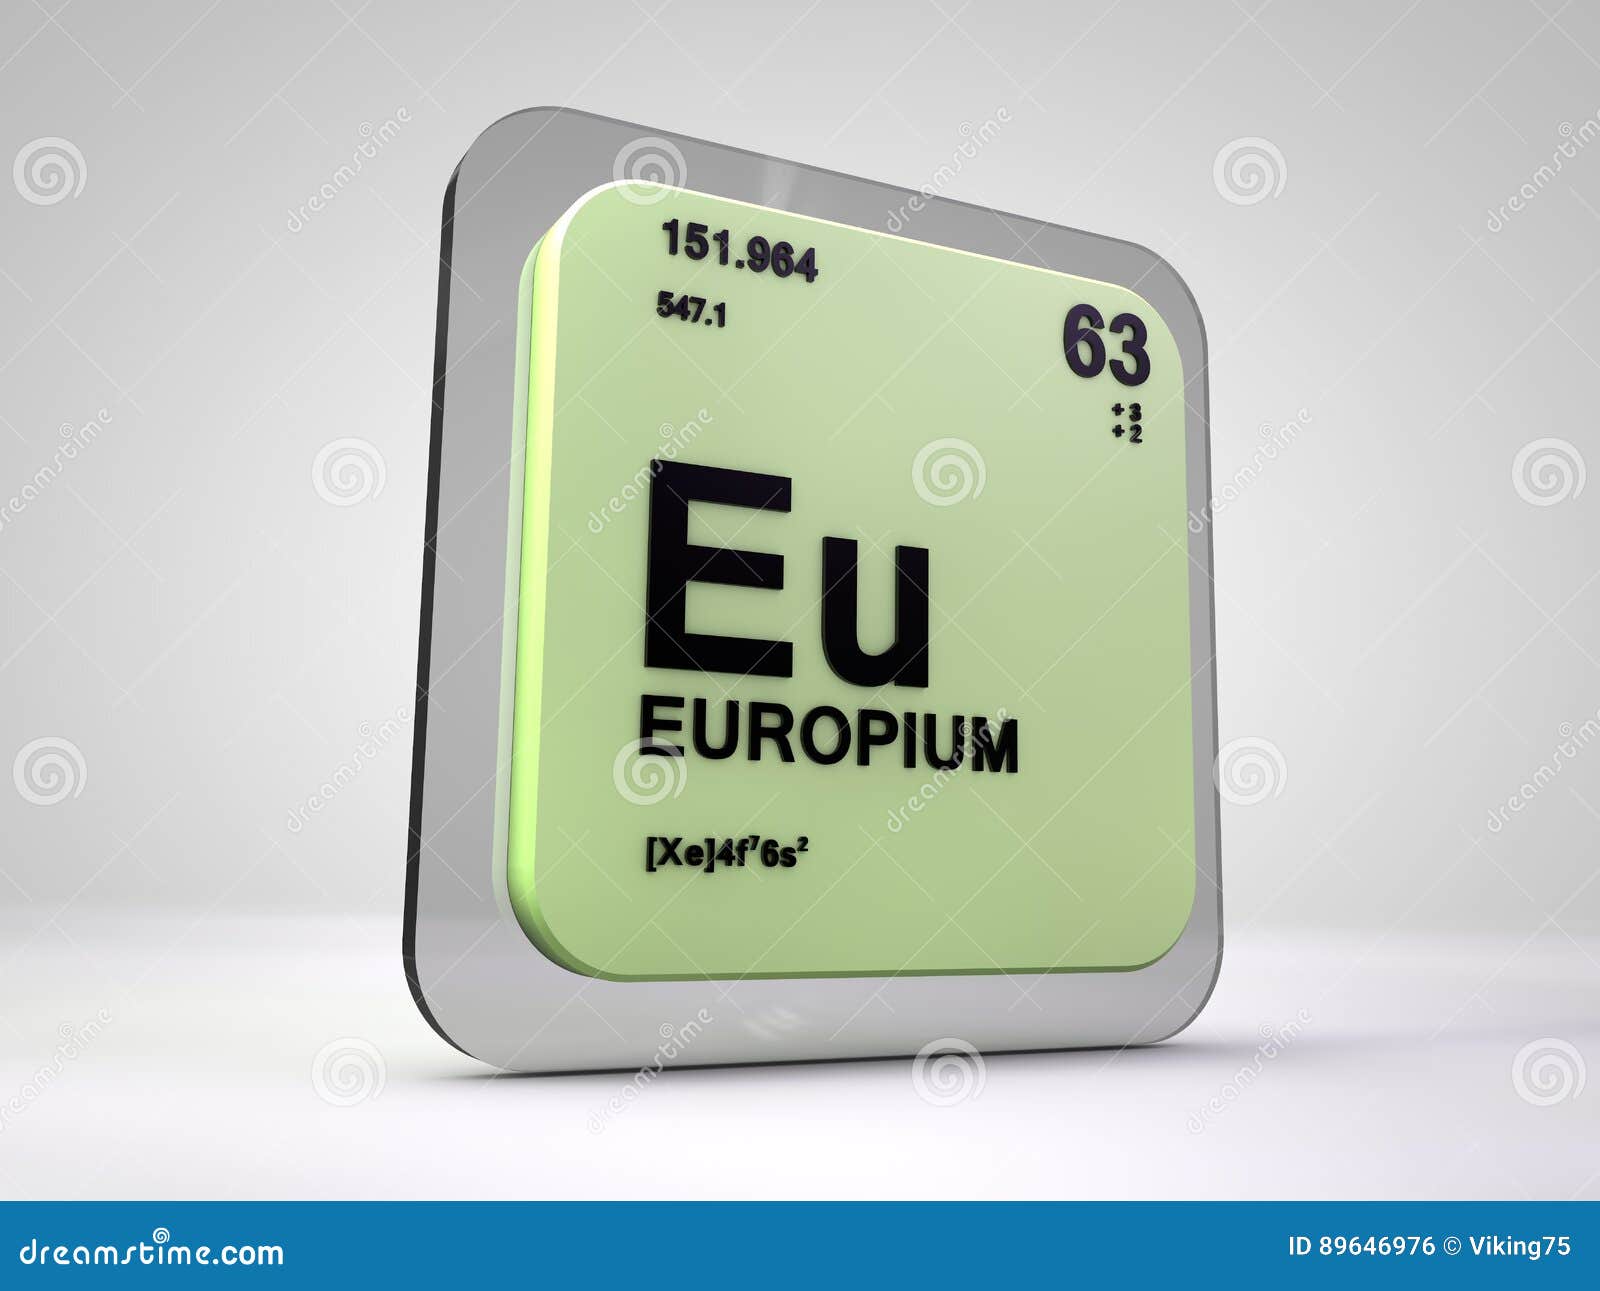 Eu химический элемент. Bi химический элемент. Европий. TC химический элемент. Европий изотоп